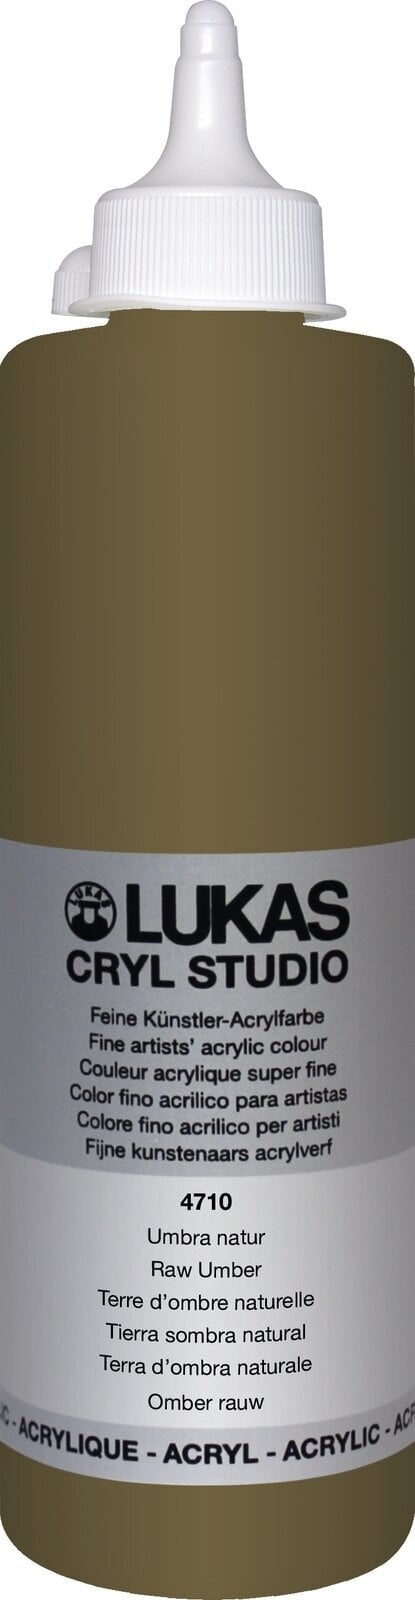 Tinta acrílica Lukas Cryl Studio Acrylic Paint Plastic Bottle Tinta acrílica Raw Umber 500 ml 1 un.